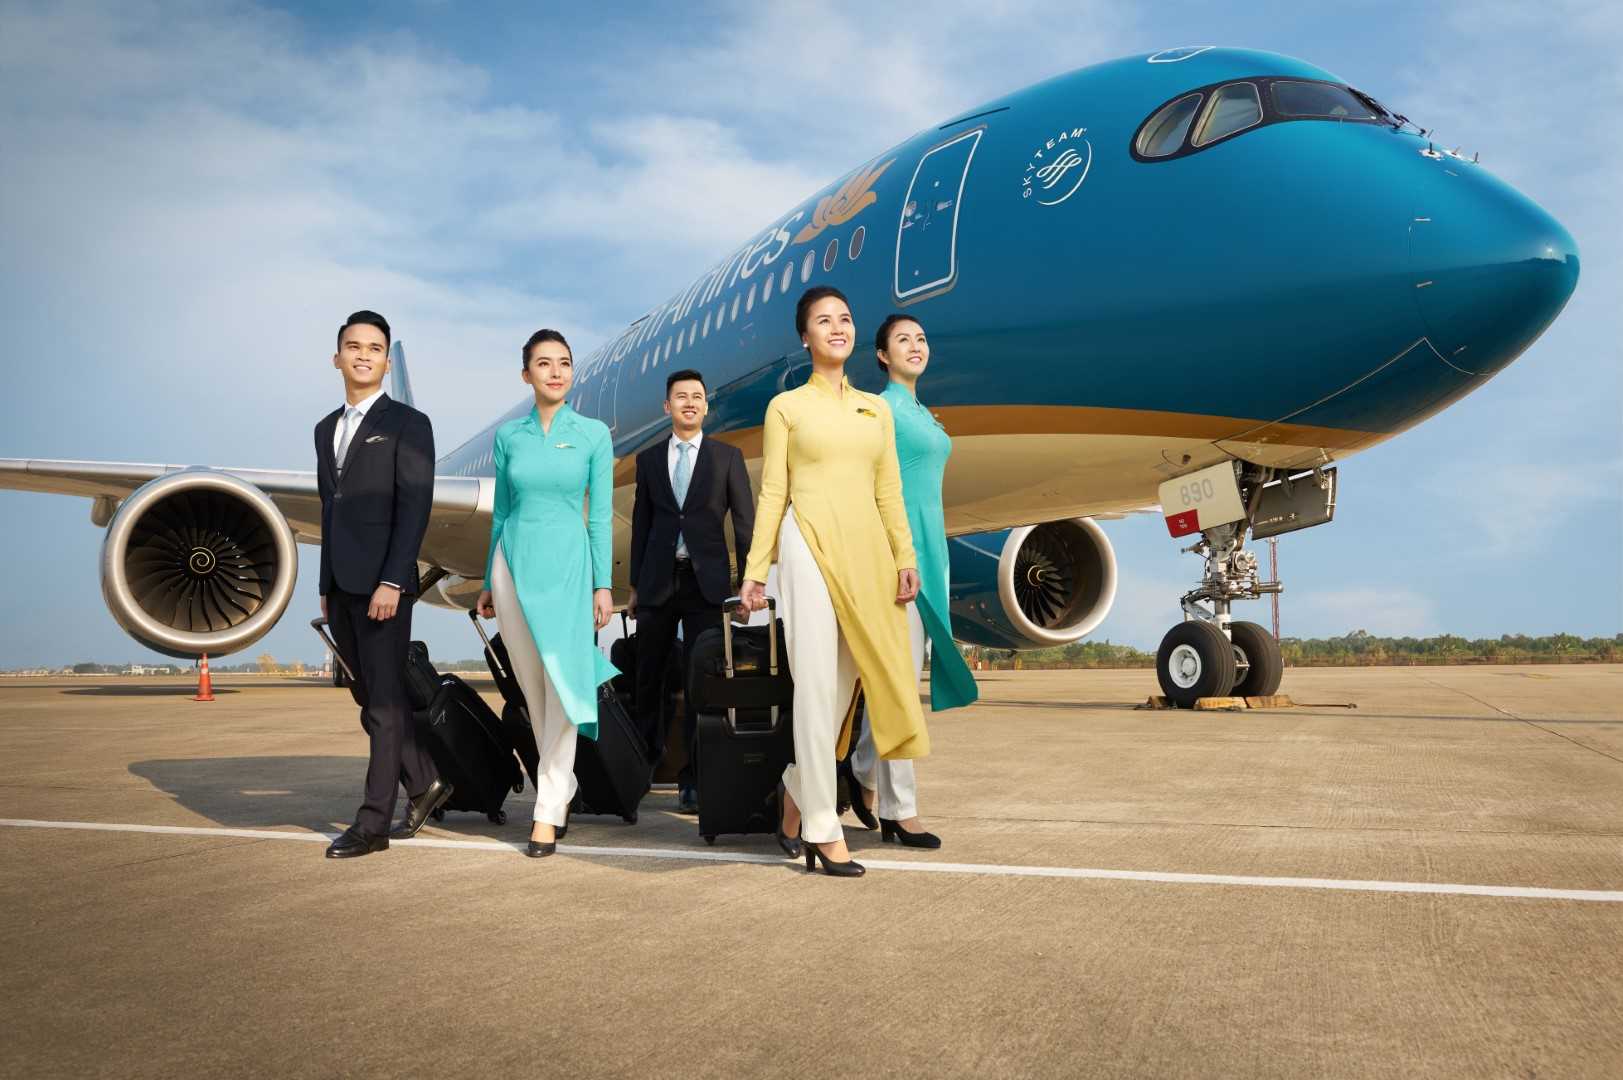 Nắm rõ thông tin sân bay sẽ giúp Quý khách có hành trình từ Đà Lạt đến Côn Đảo thuận lợi hơn